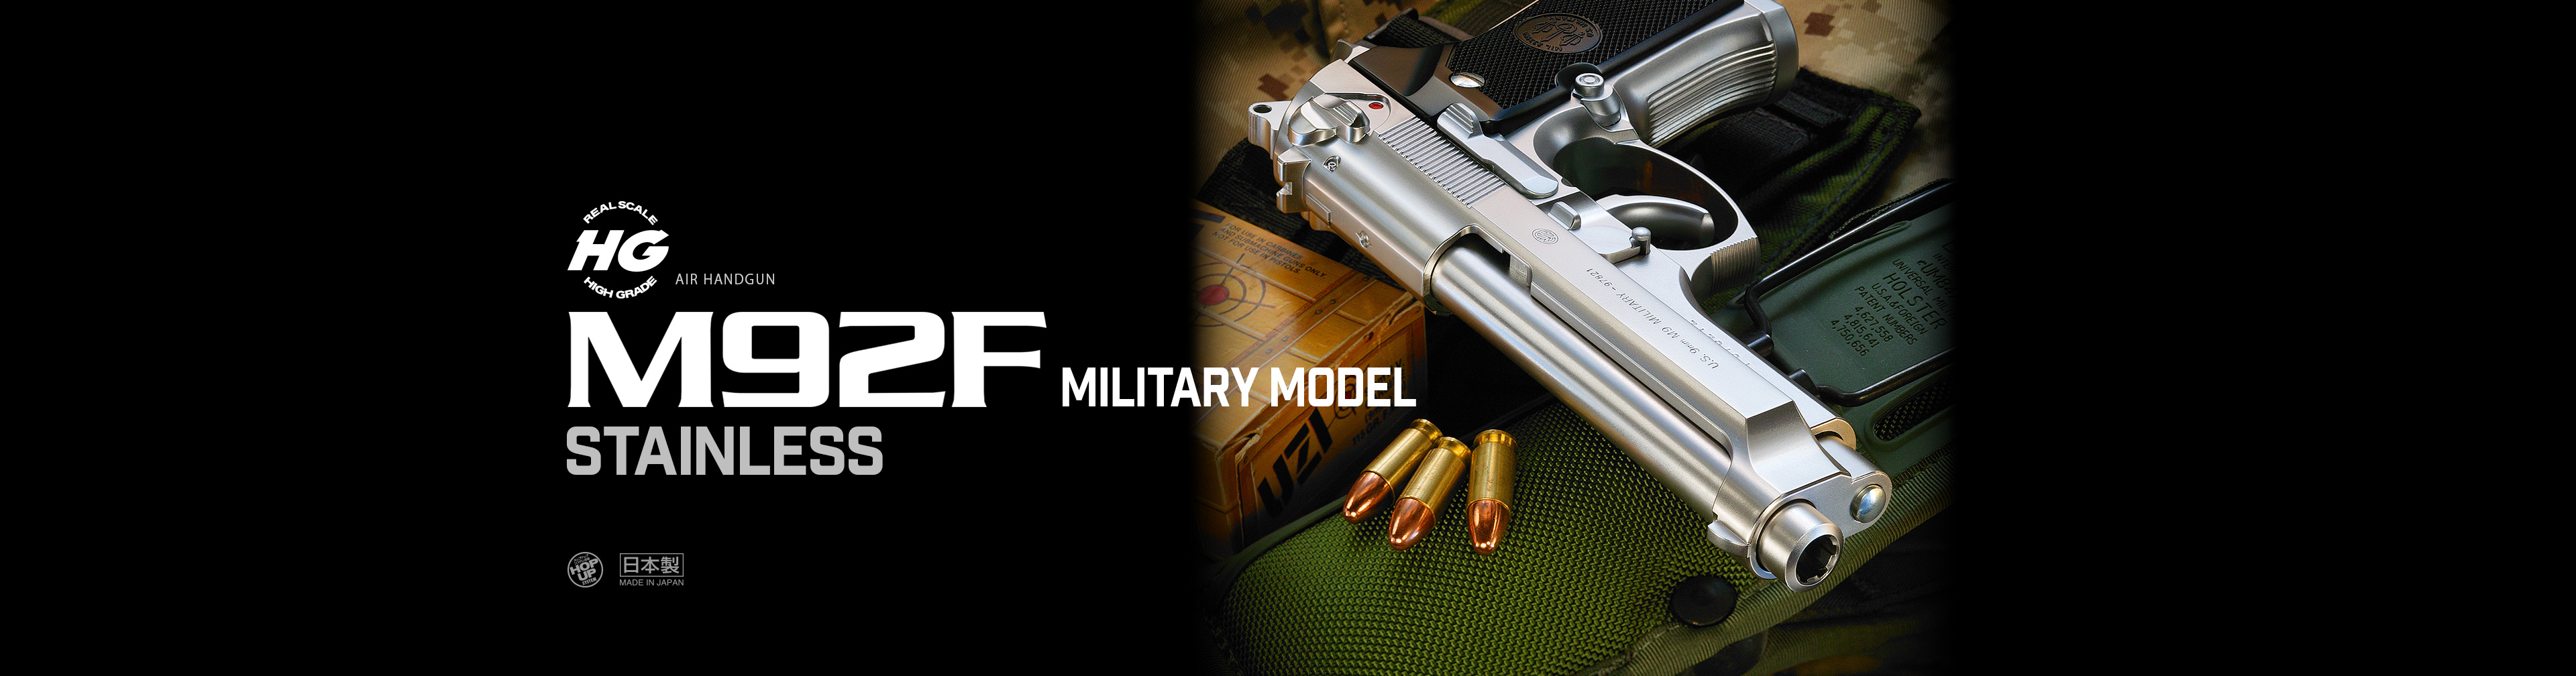 M92F ミリタリーモデル ステンレス【ハイグレード/ホップアップ】